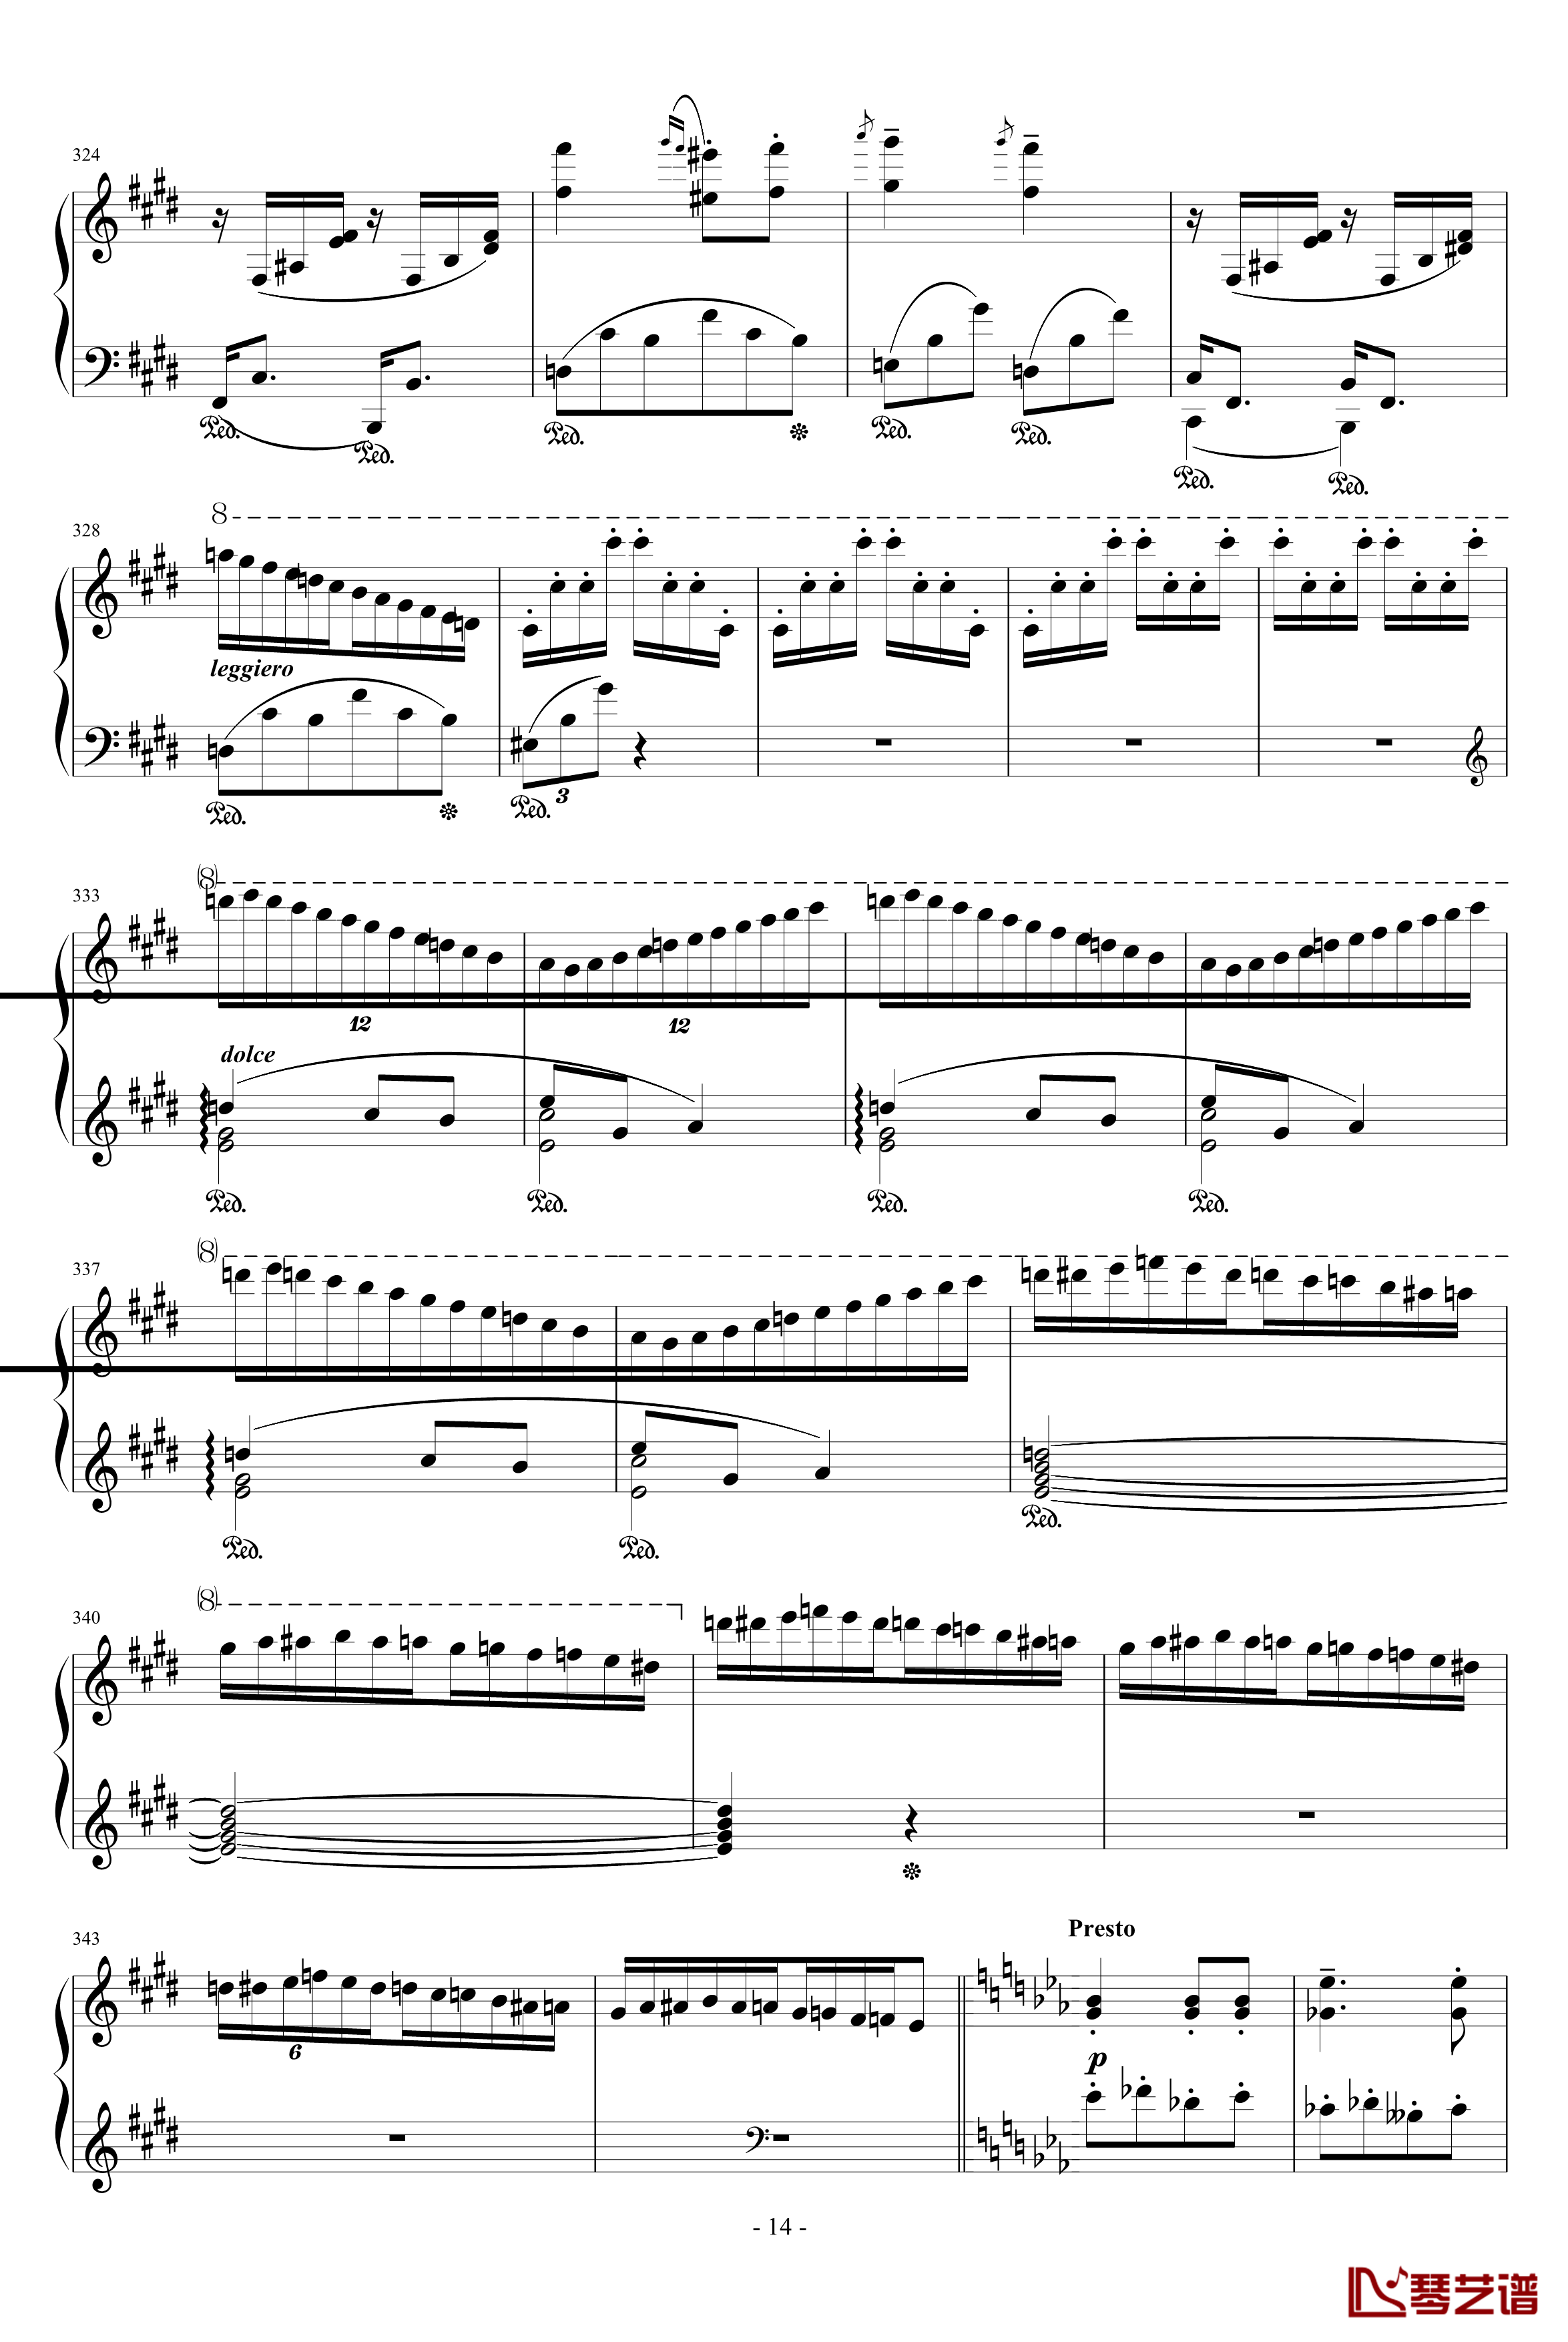 匈牙利狂想曲第9号钢琴谱-19首匈狂里篇幅最浩大、技巧最艰深的作品之一-李斯特